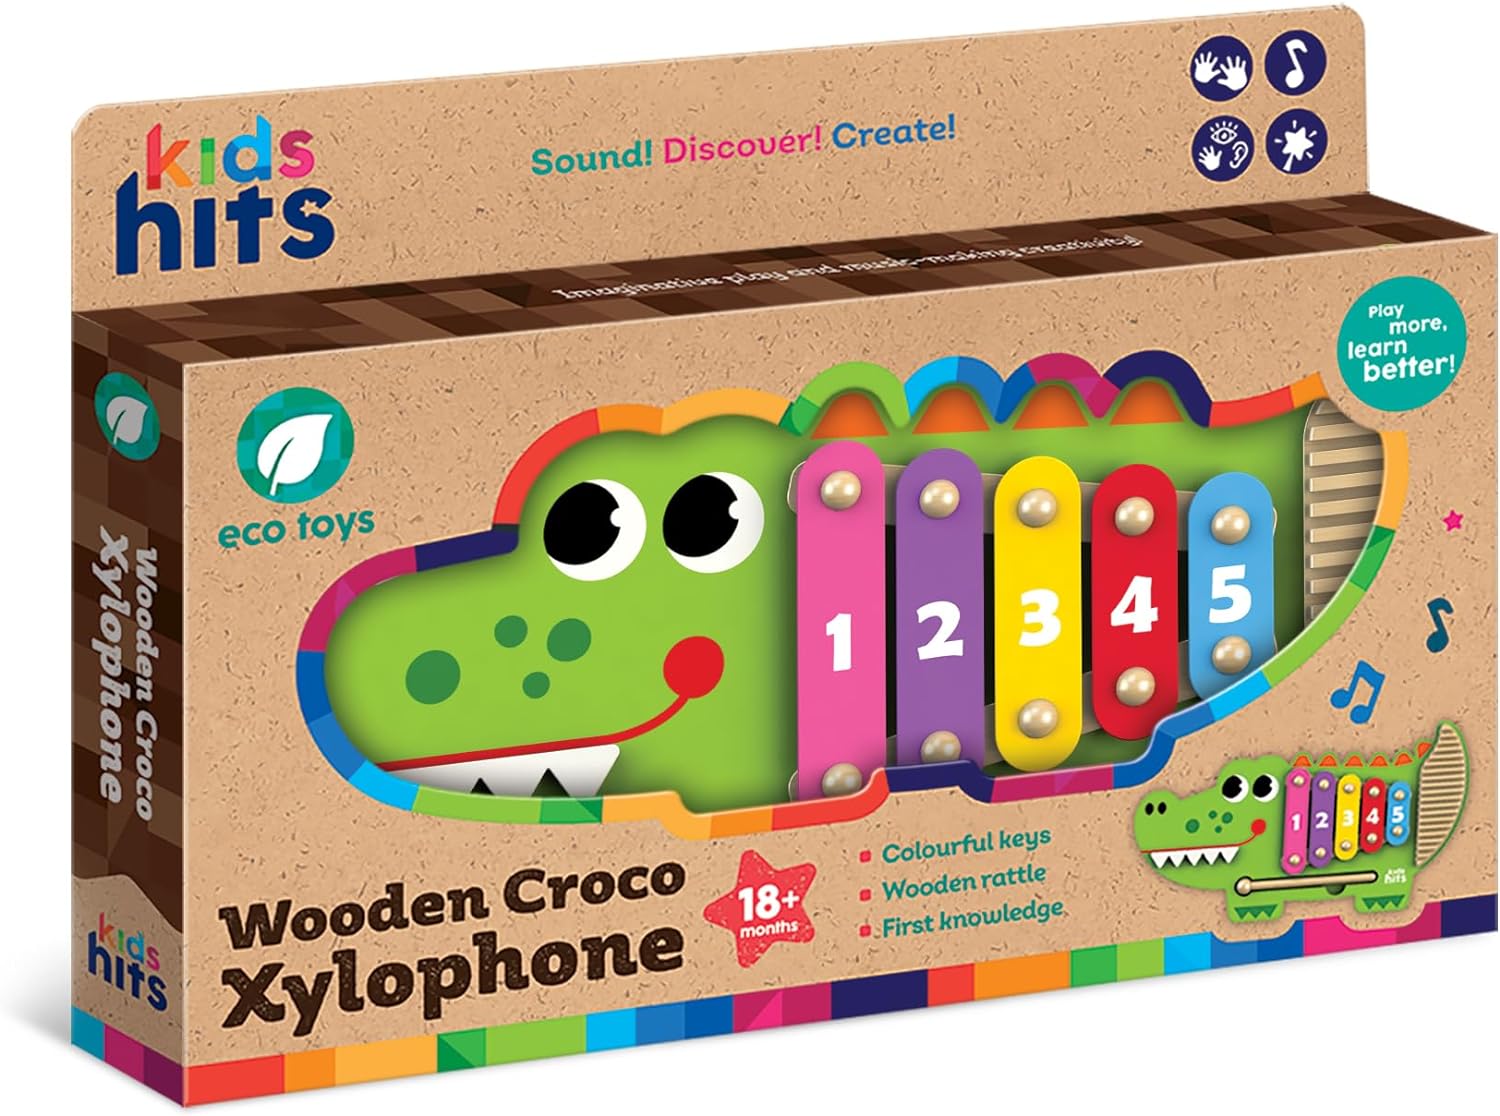 تعمل لعبة Kids Hits على تنسيق وقت اللعب مع مغامرة الإكسيليفون الخشبية من كروكو